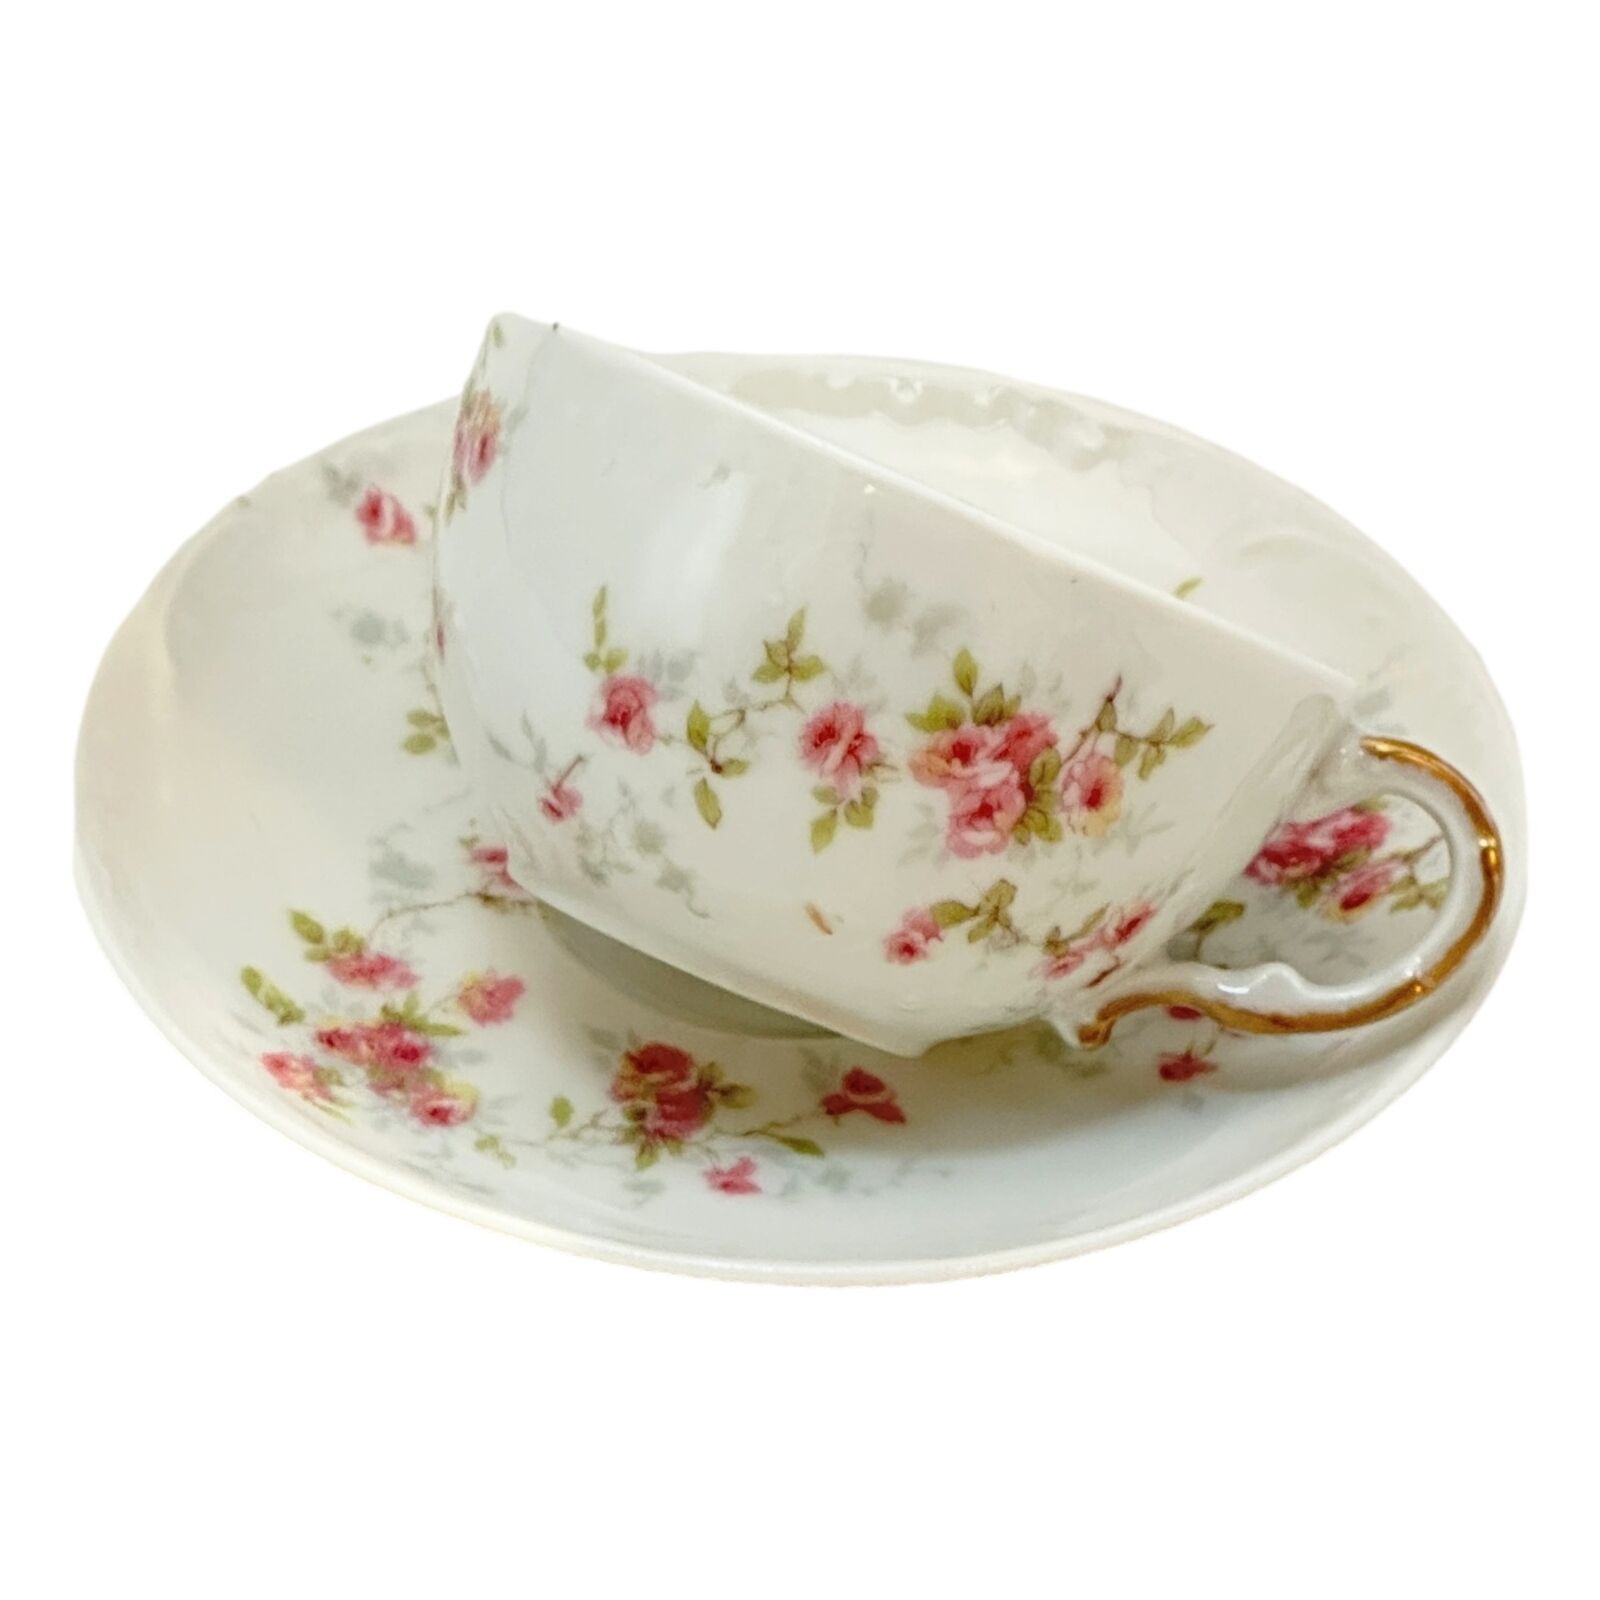 Limoges Tea Cup Saucer Theodore de Haviland Porcelain Pink Floral France Vintage